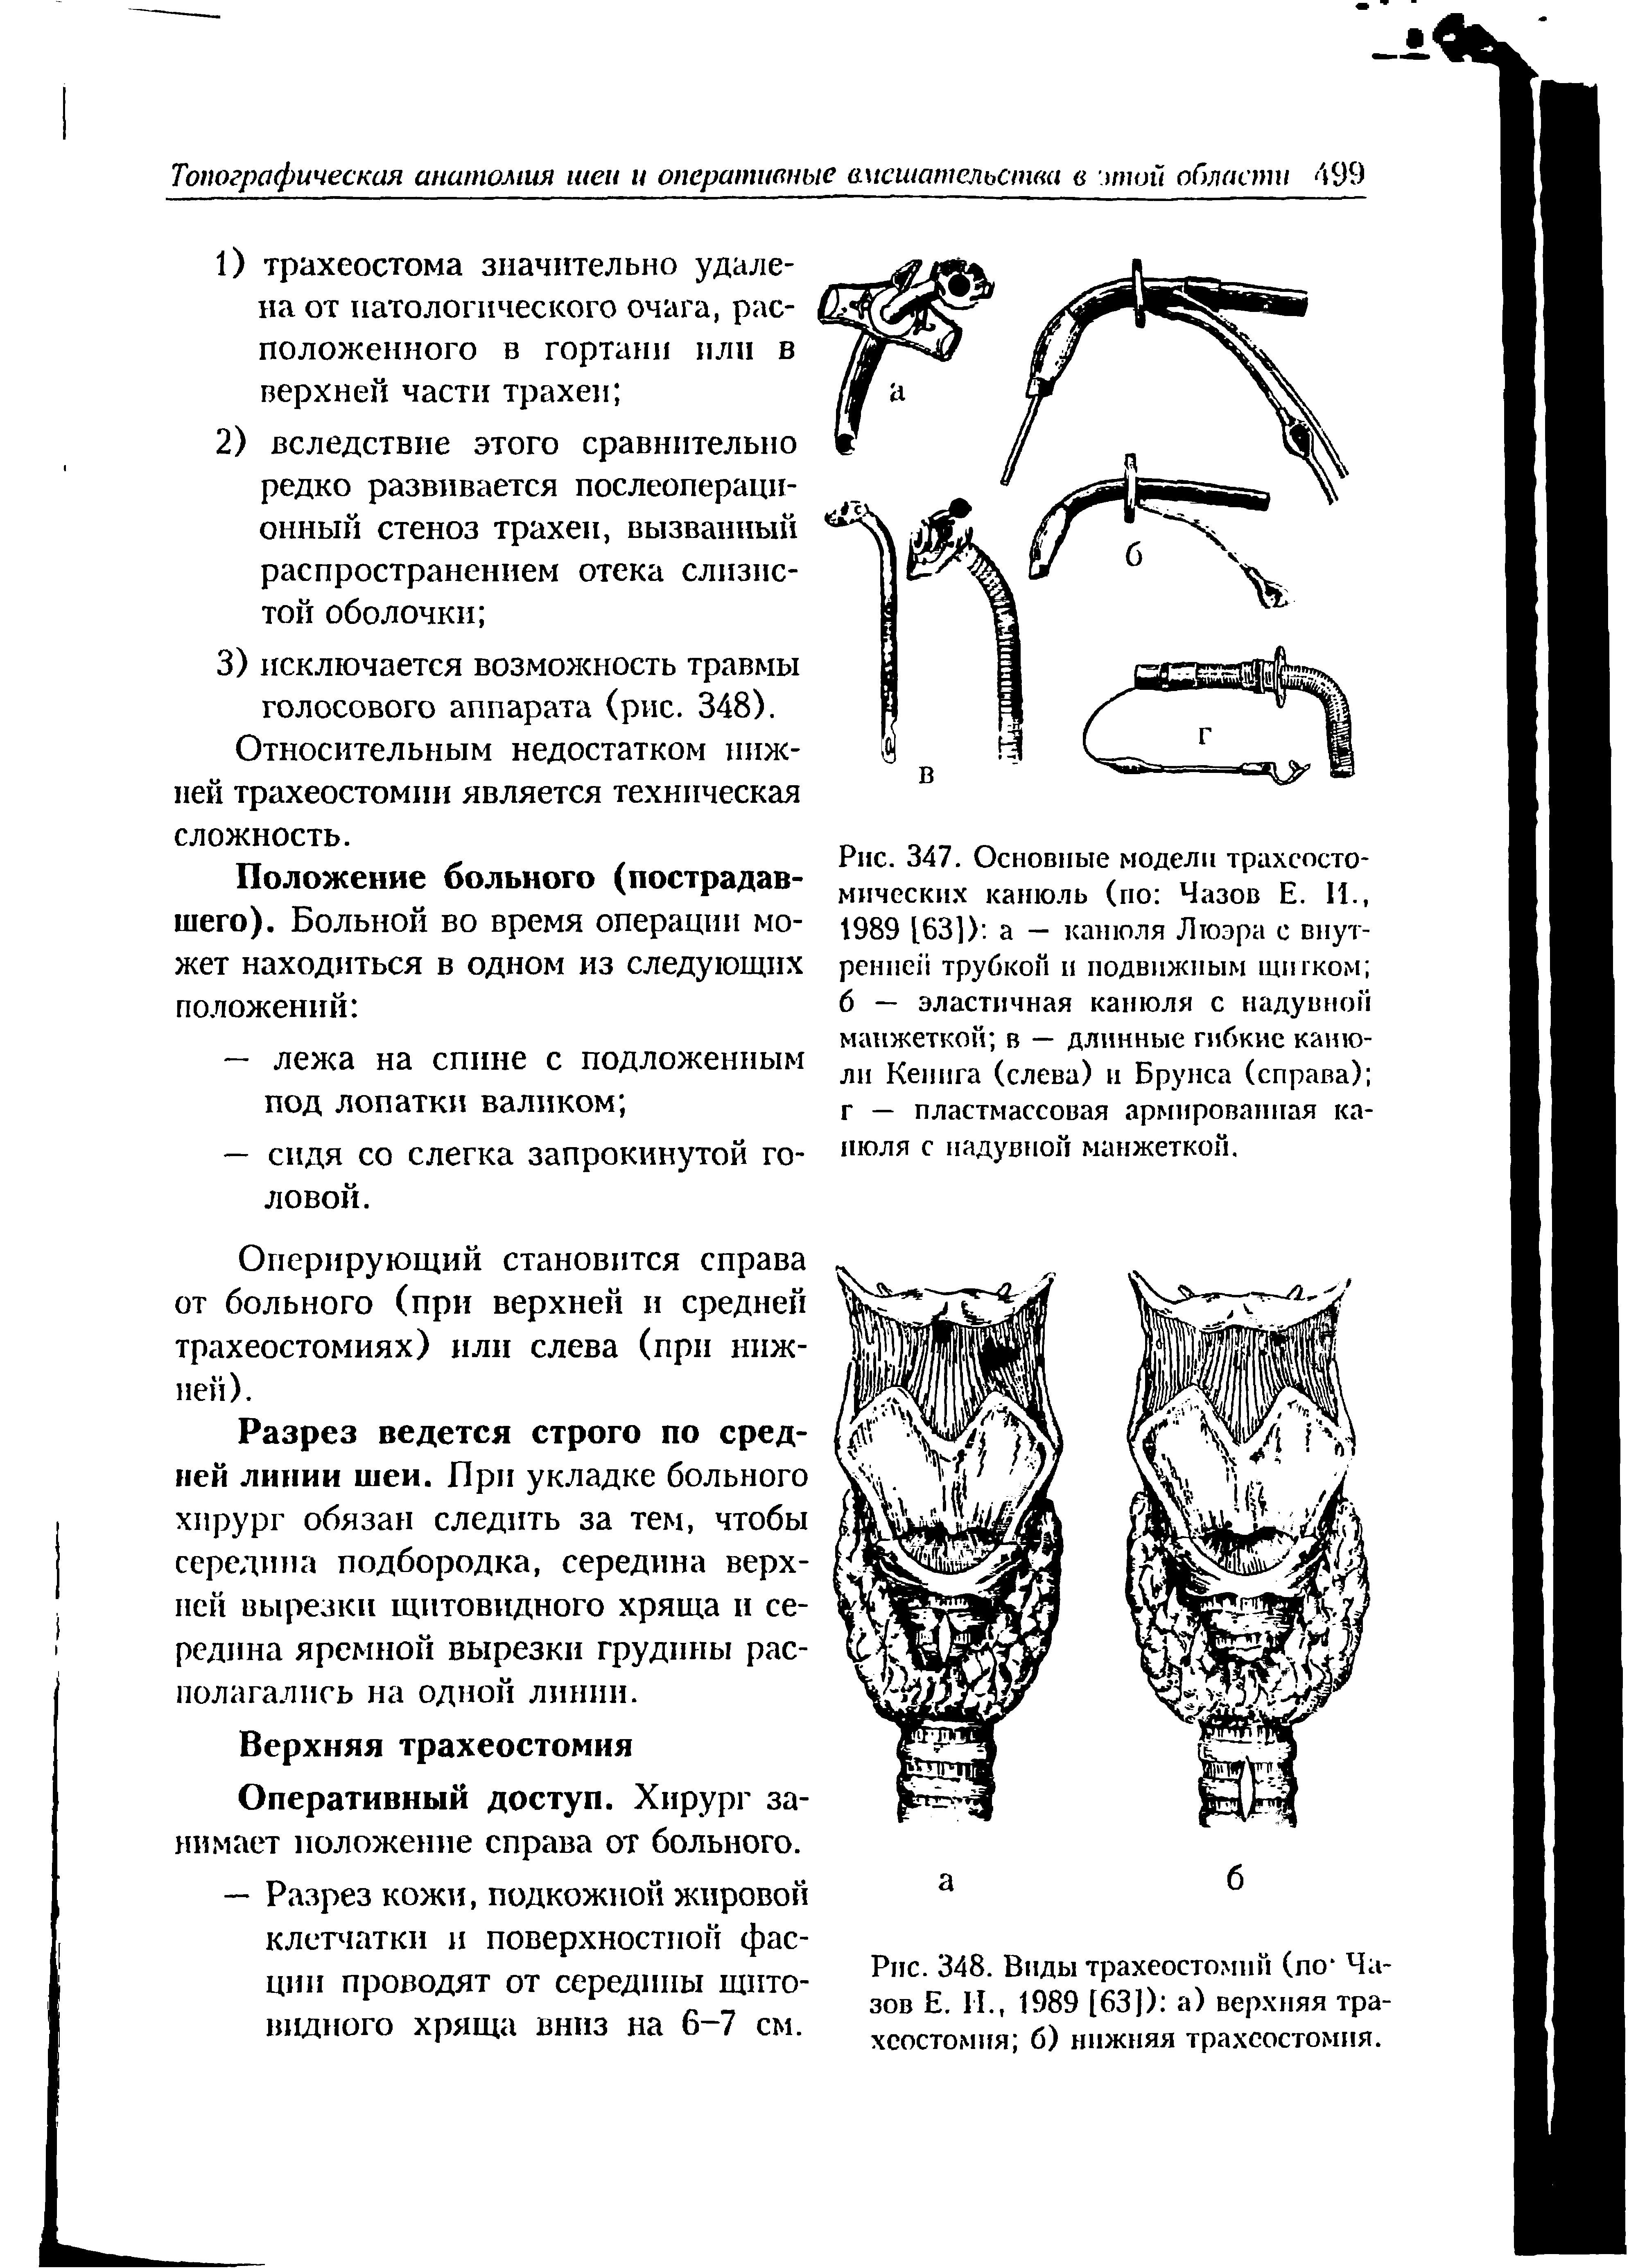 Рис. 348. Виды трахеостомий (по Чазов Е. И., 1989 [63]) а) верхняя трахеостомия б) нижняя трахеостомия.